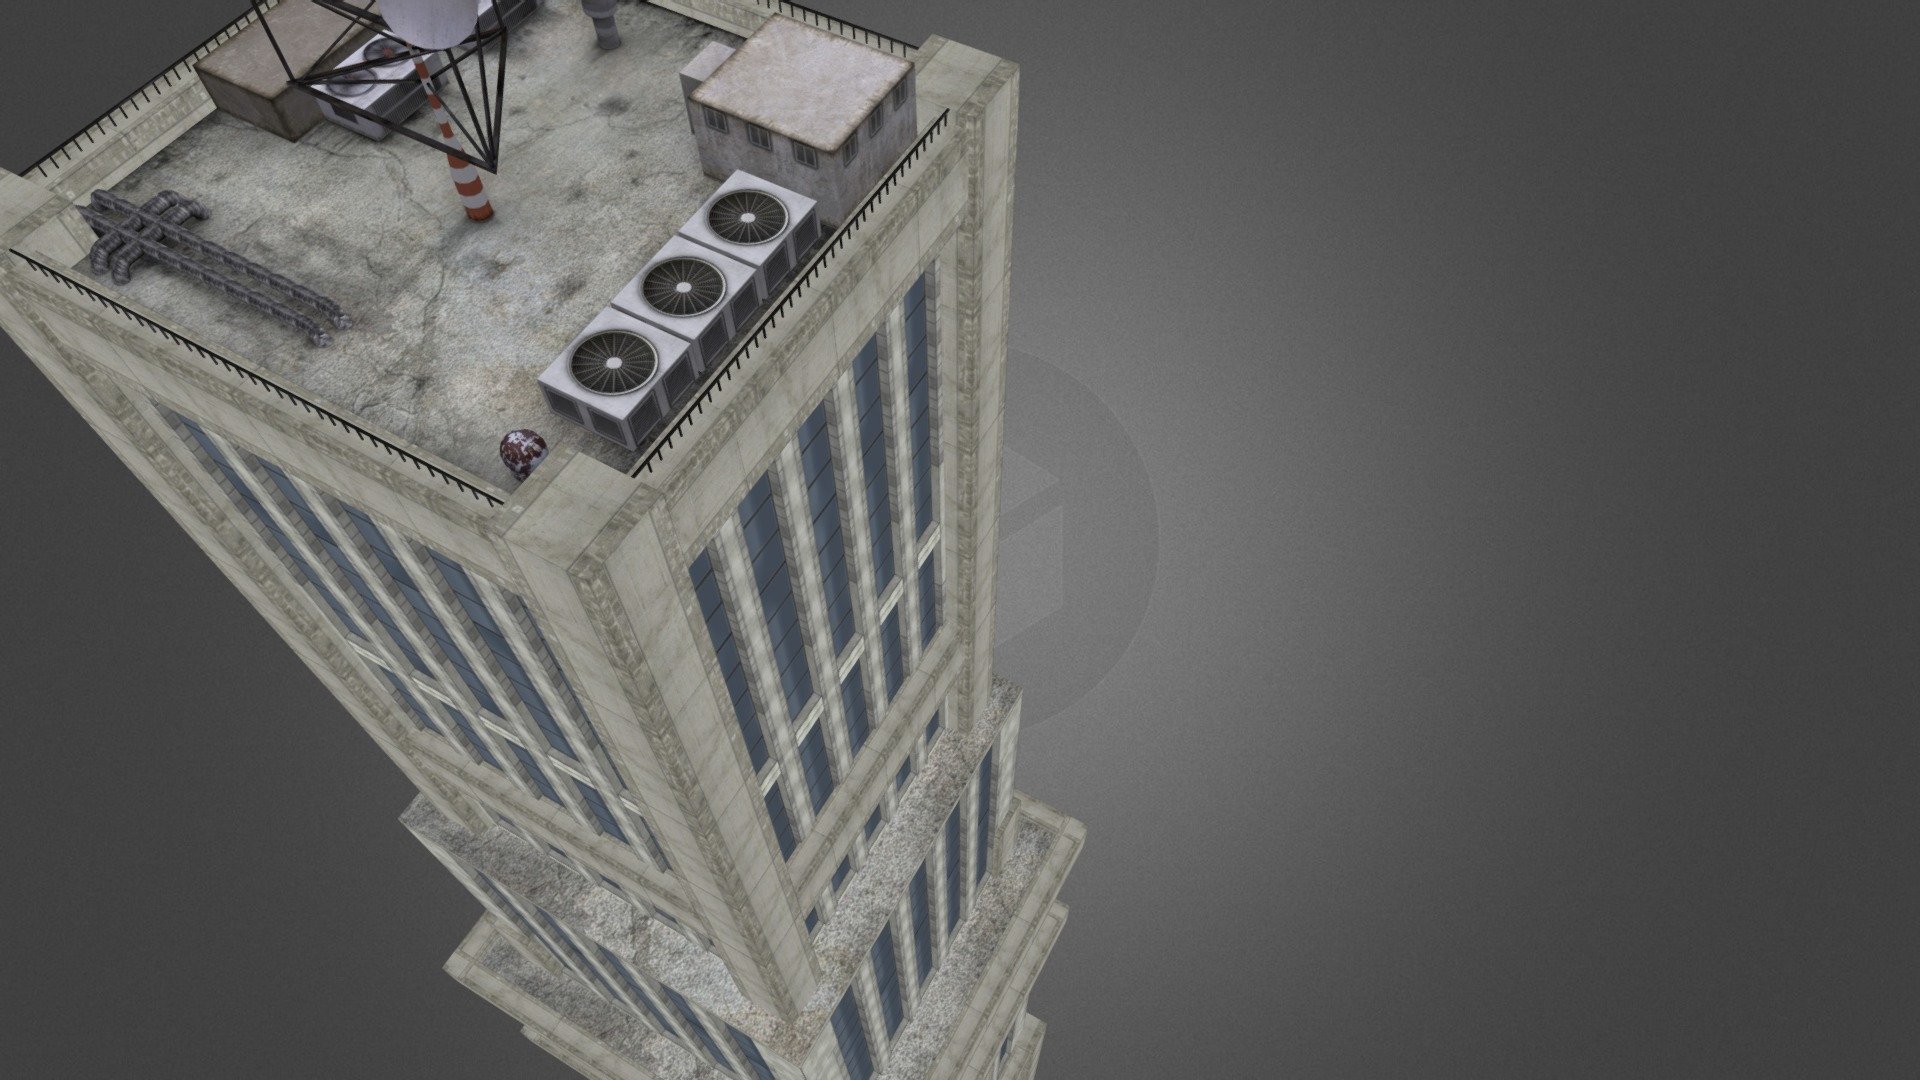 Skyscraper 0004 - Skyscraper 0004 - 3D model by CryBlog Brasil (@cryblogbrasil) 3d model